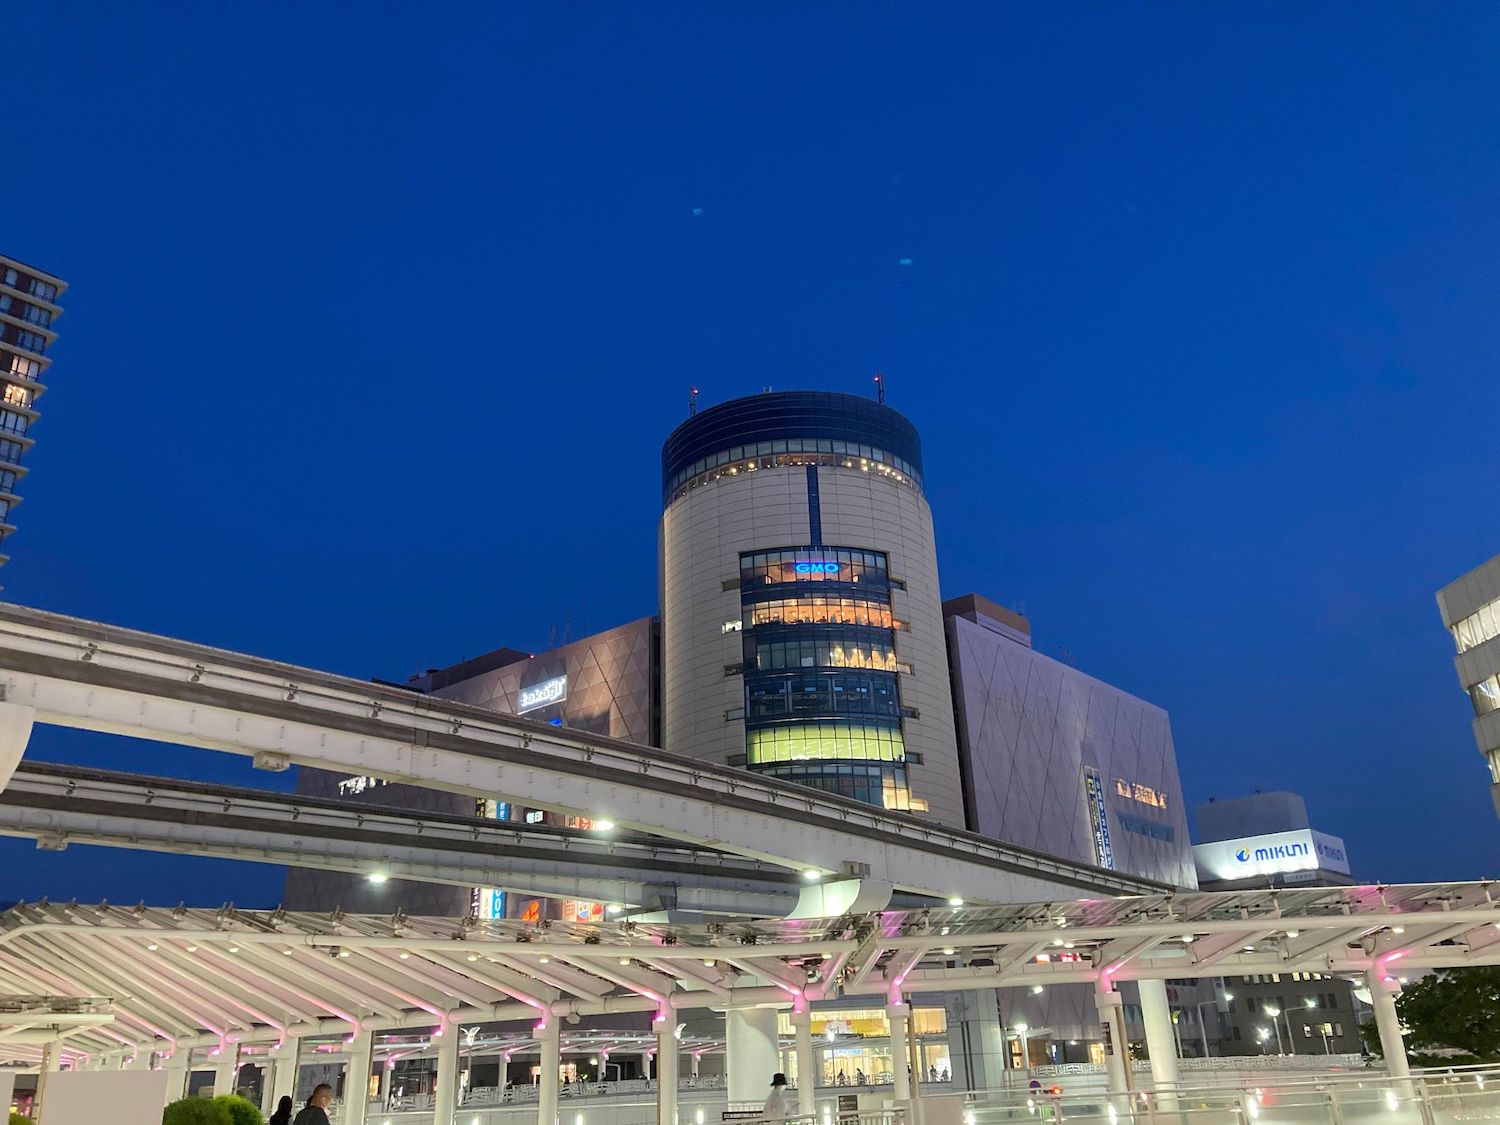 小倉駅から見た夜のセントシティ。GMOインターネットのネオンが夜の街を明るく照らしている